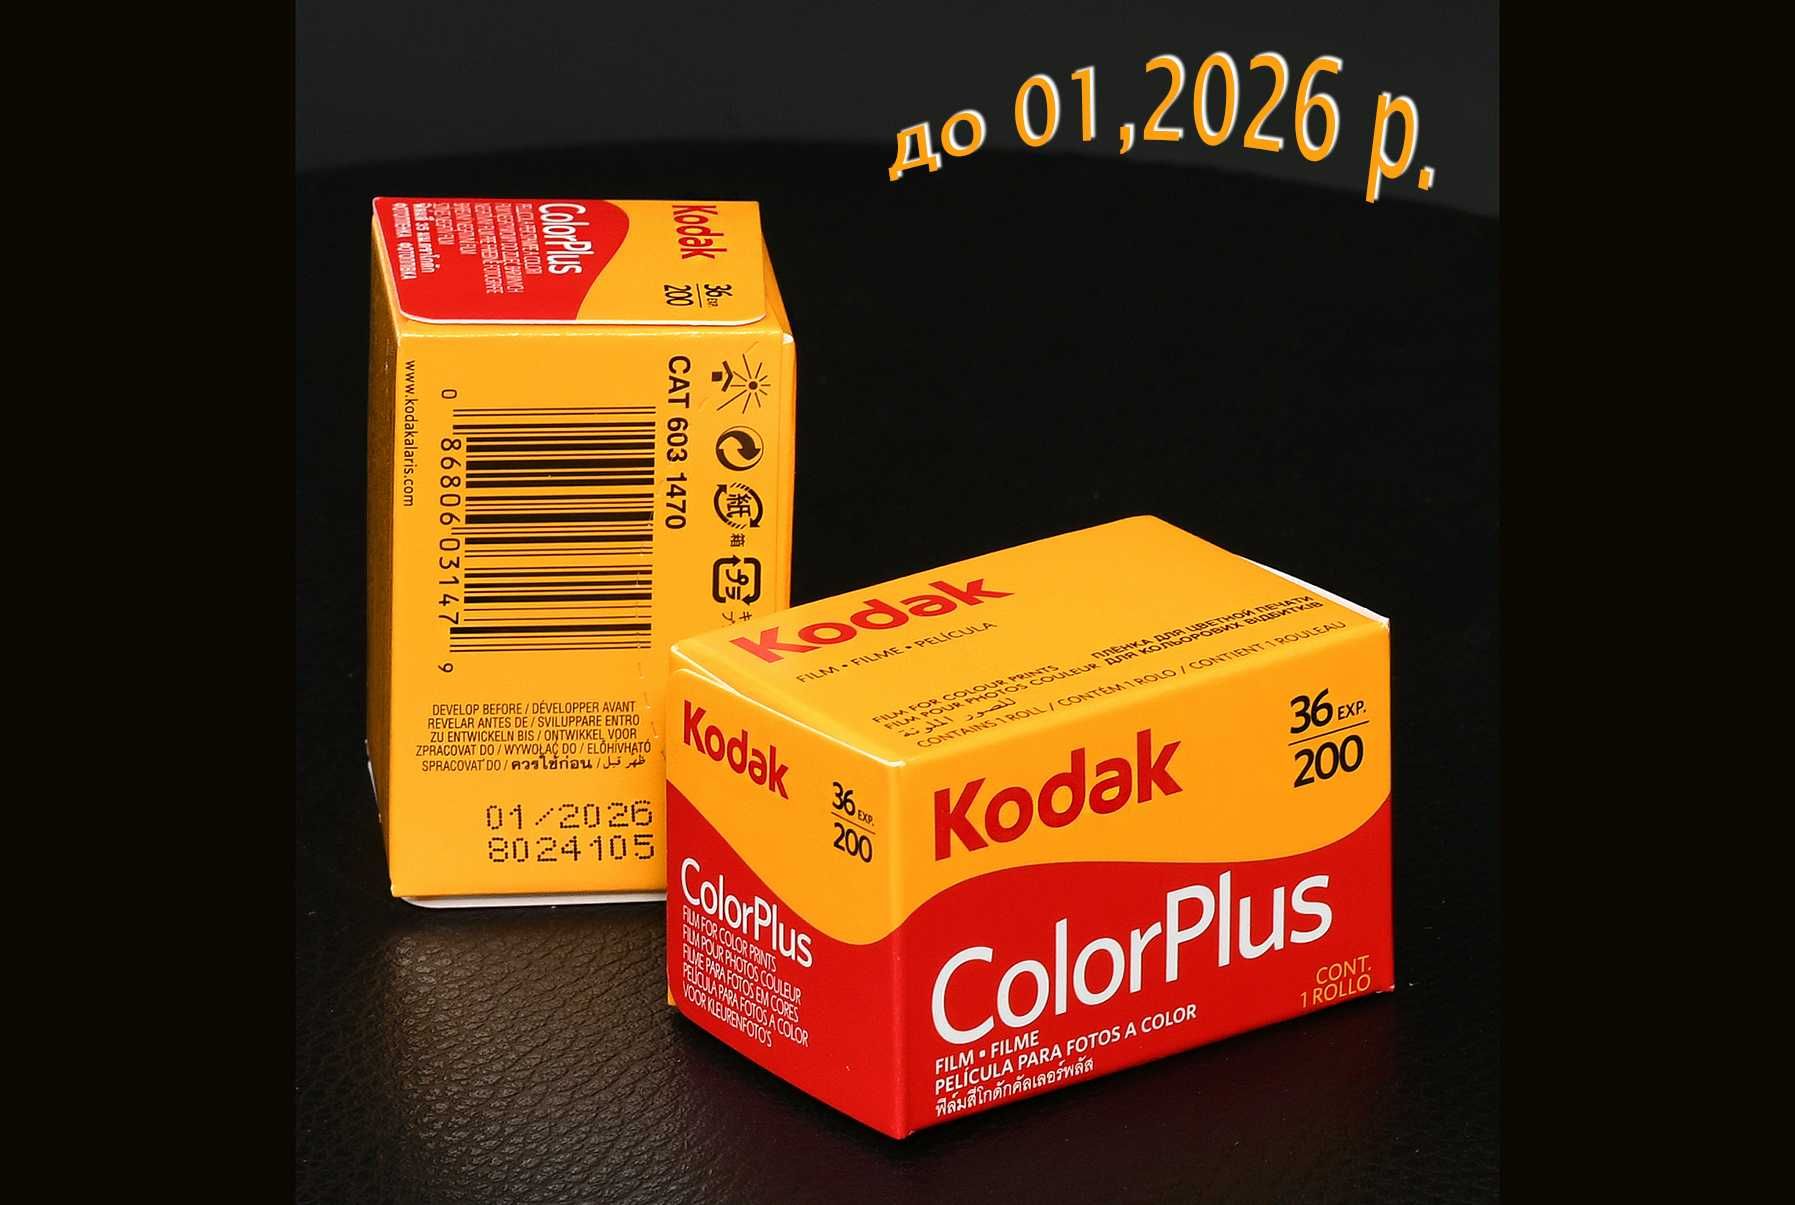 Фотоплівка Kodak Color Plus 200/36 (до 01,2026р.)